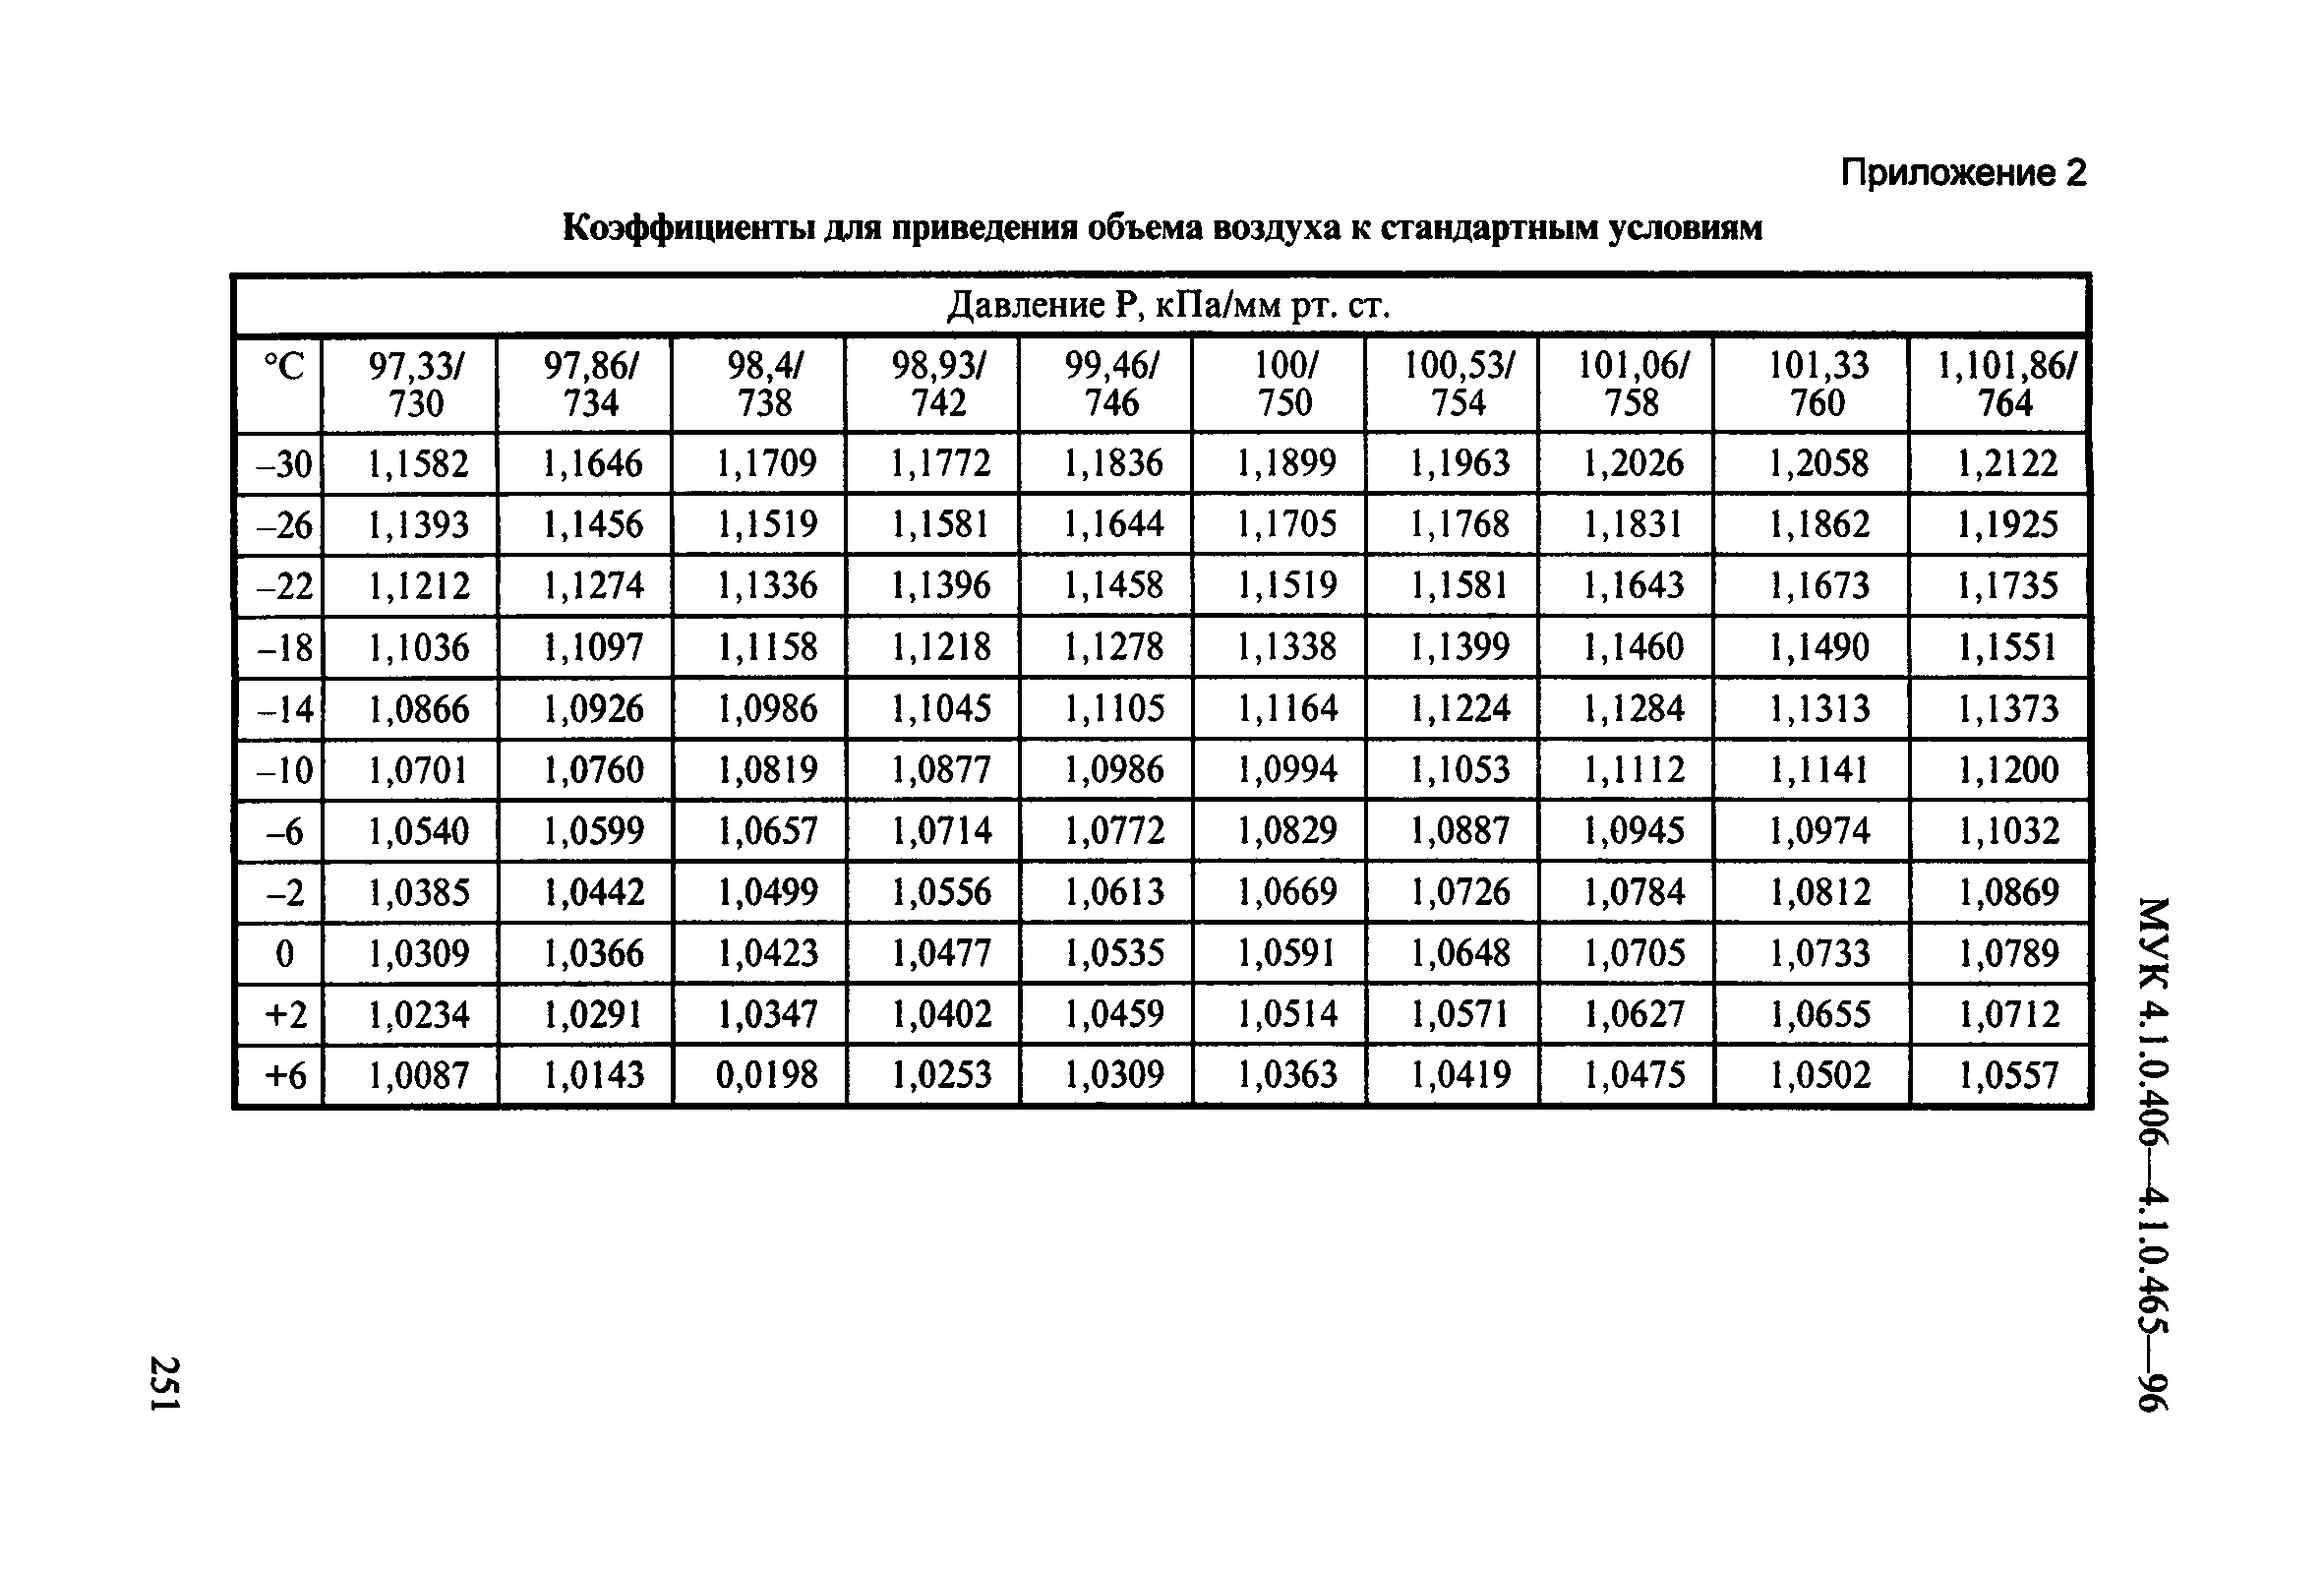 МУК 4.1.0.430-96